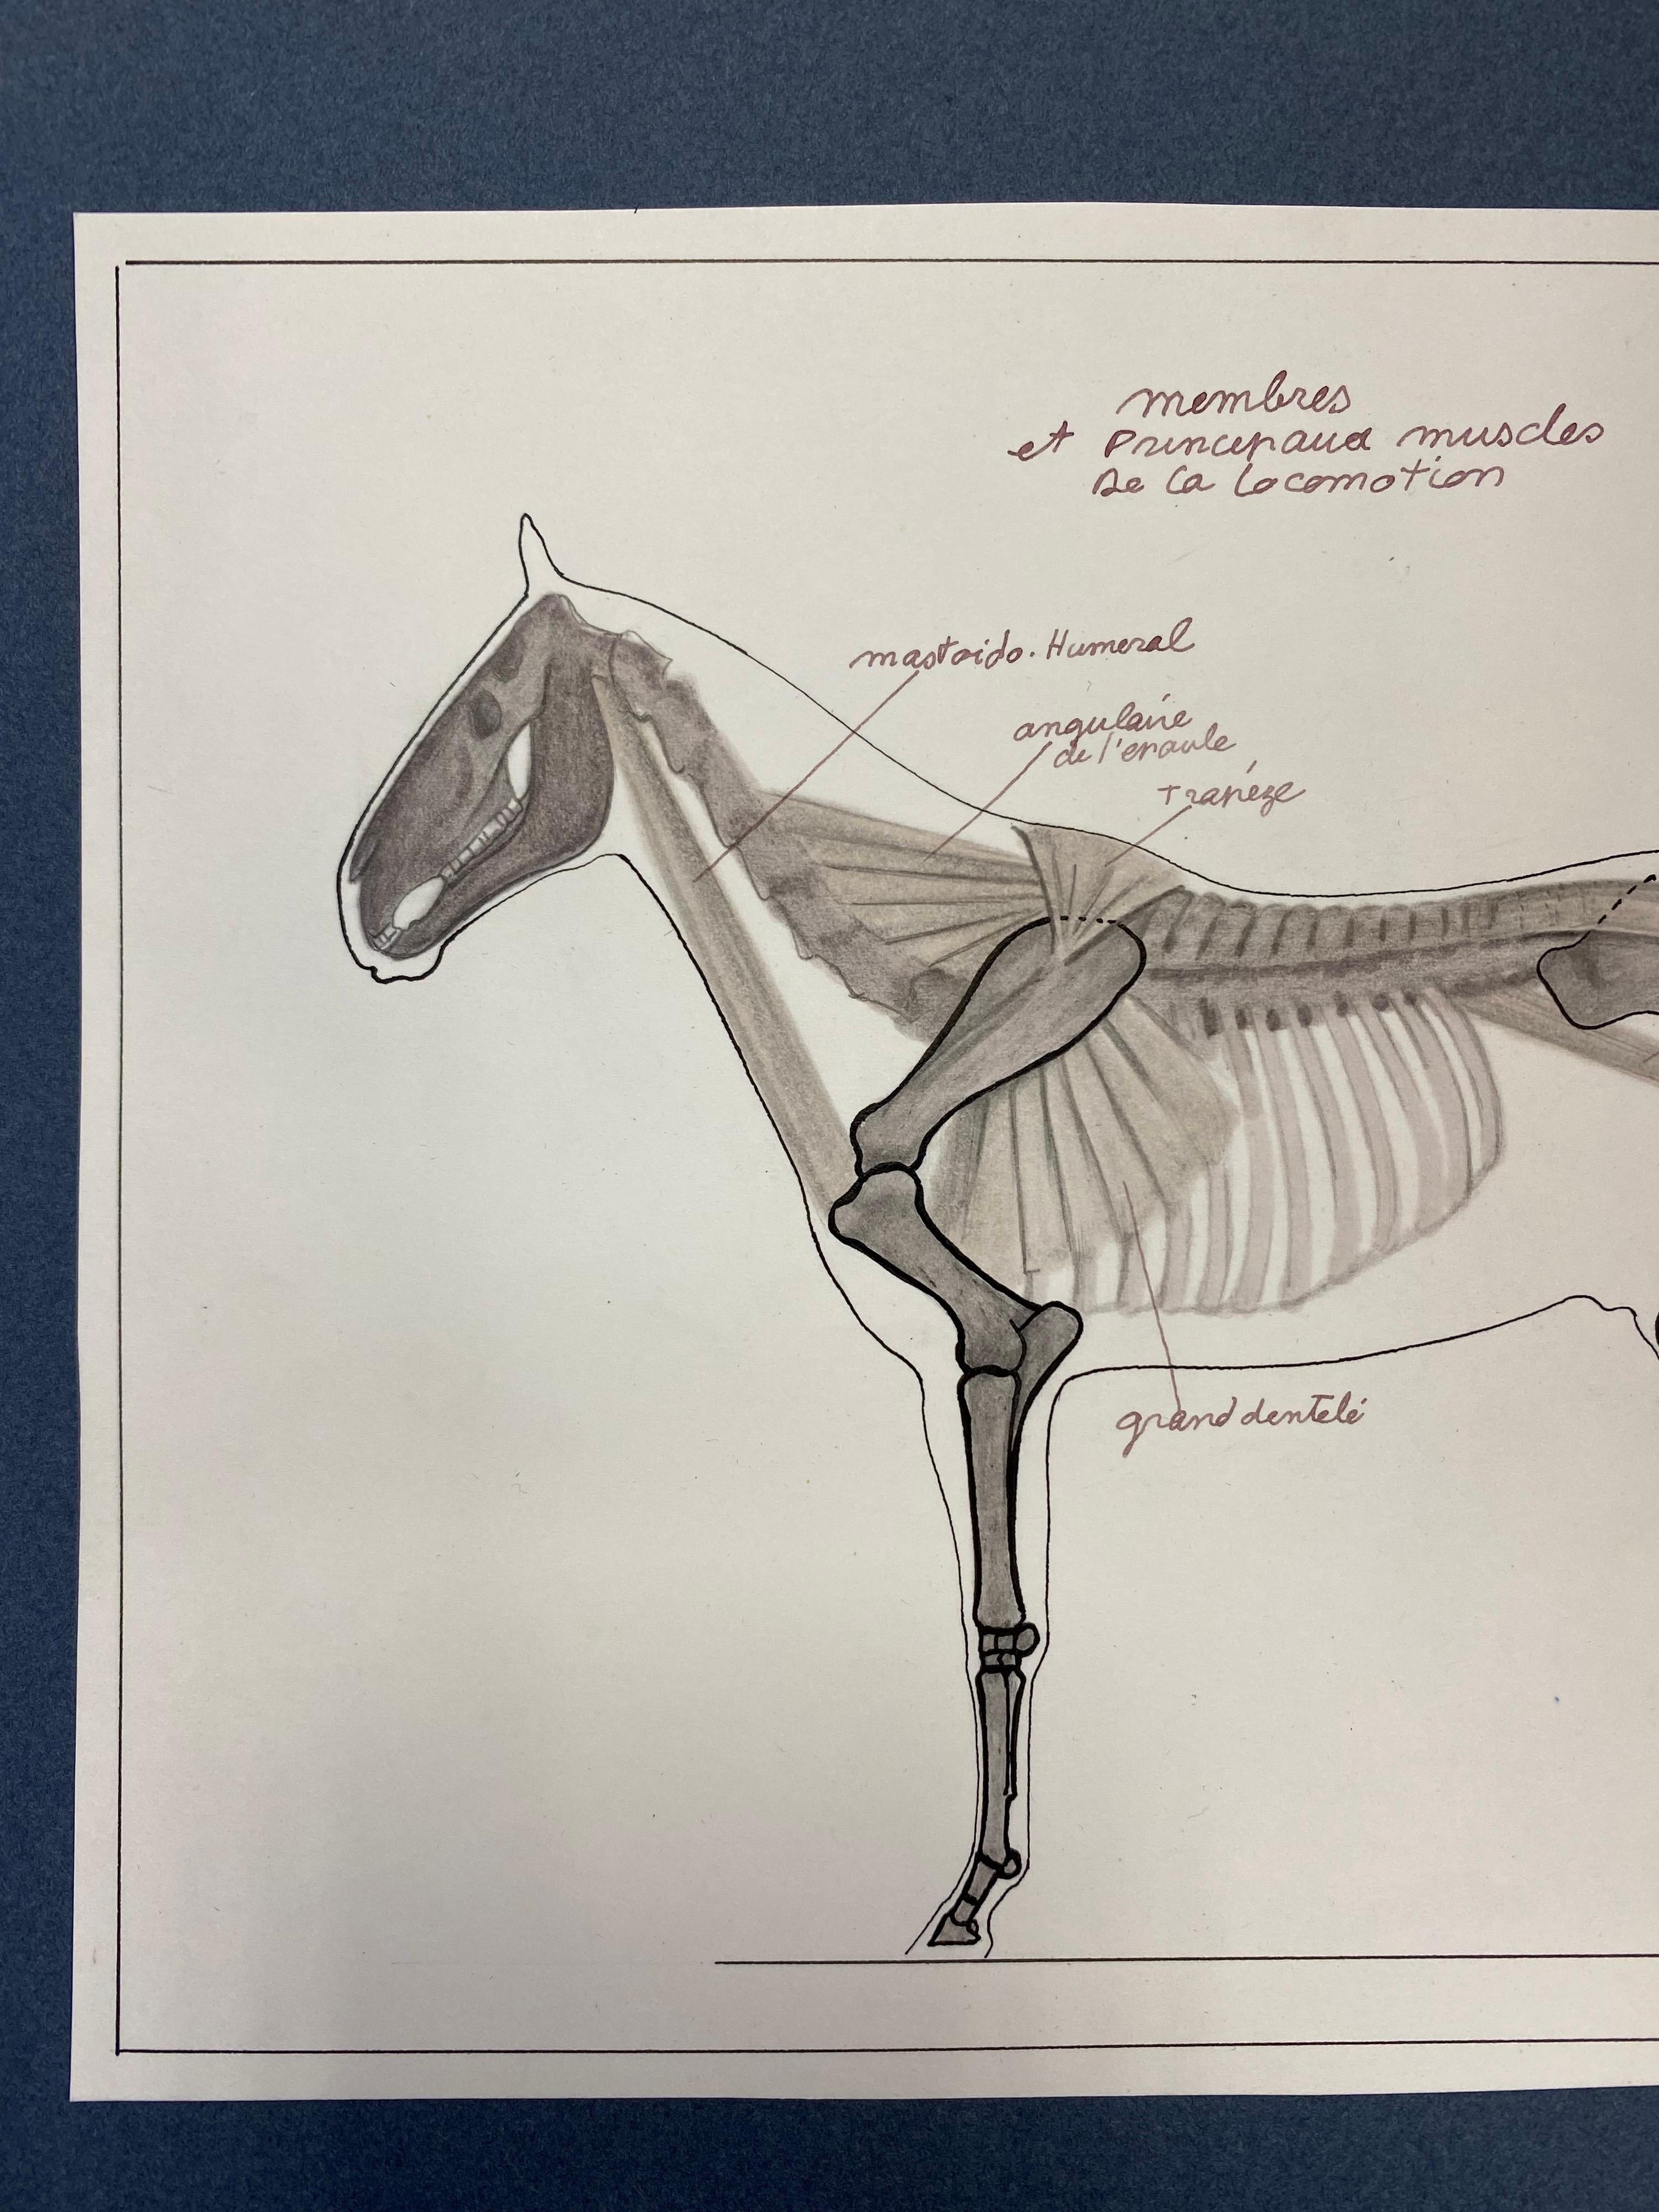 Des dessins d'un cheval - étude d'anatomie équestre française d'origine - Académique Art par Robert Ladou